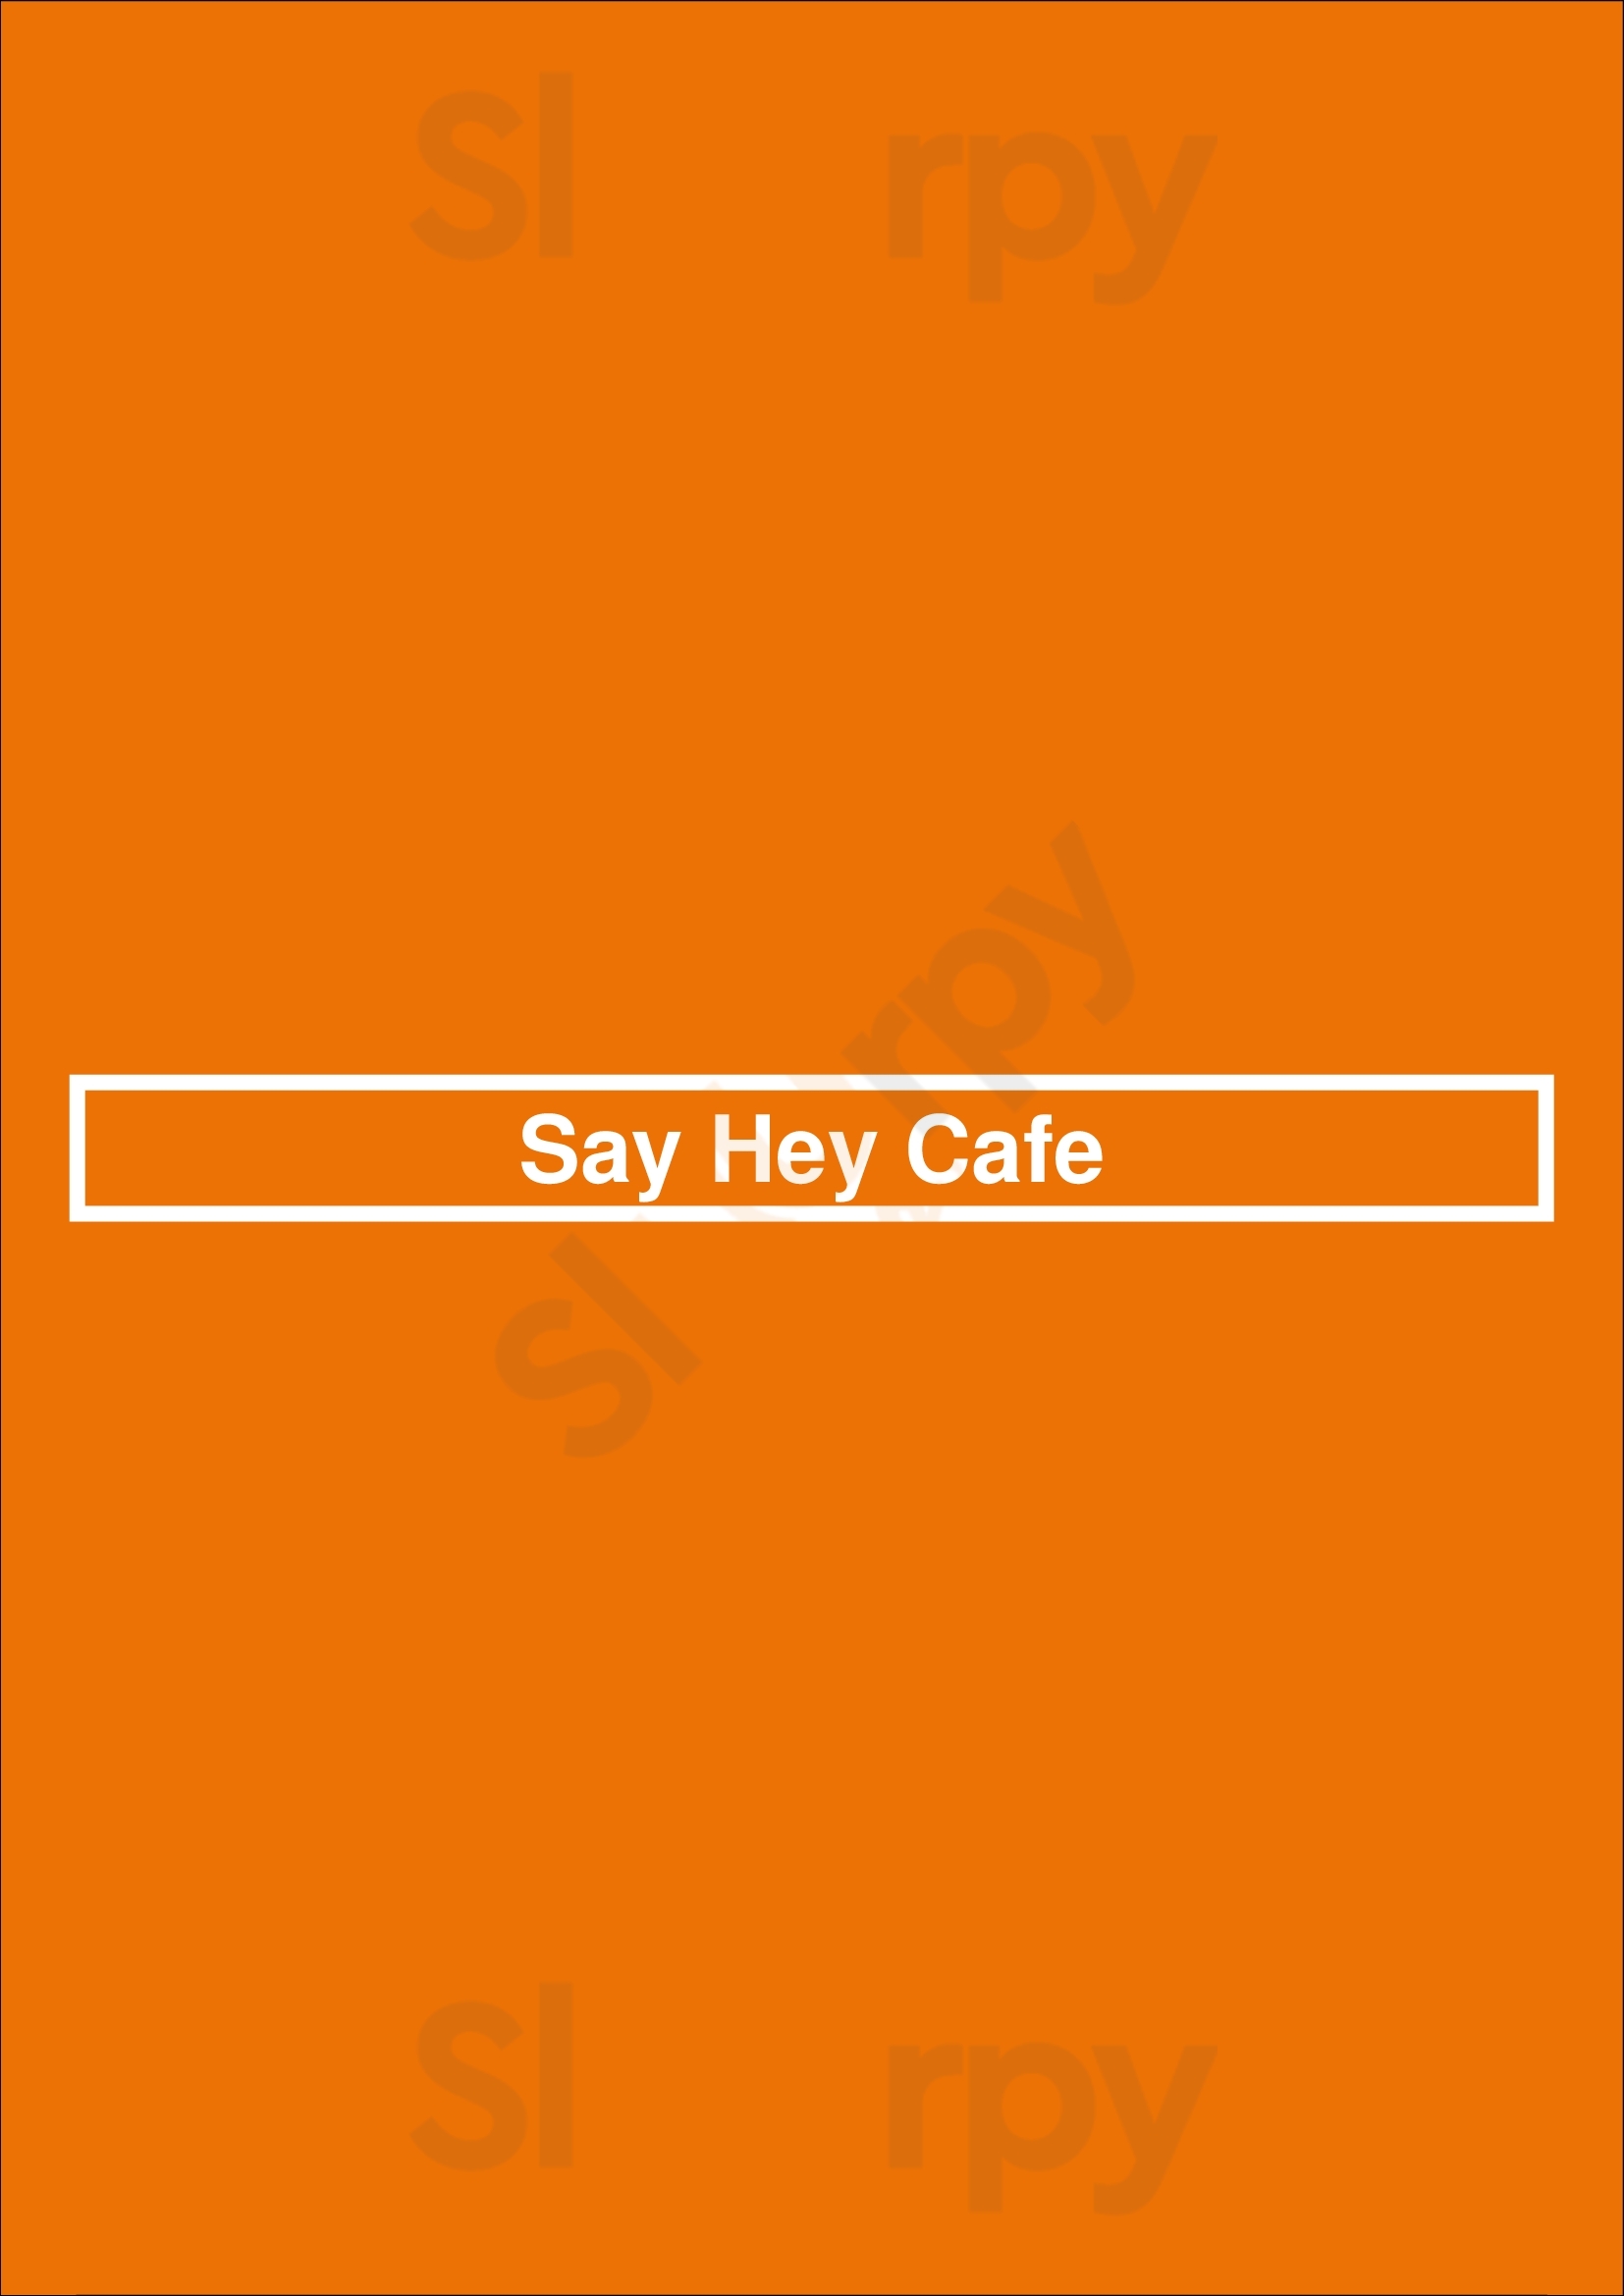 Say Hey Cafe & Deli Vancouver Menu - 1